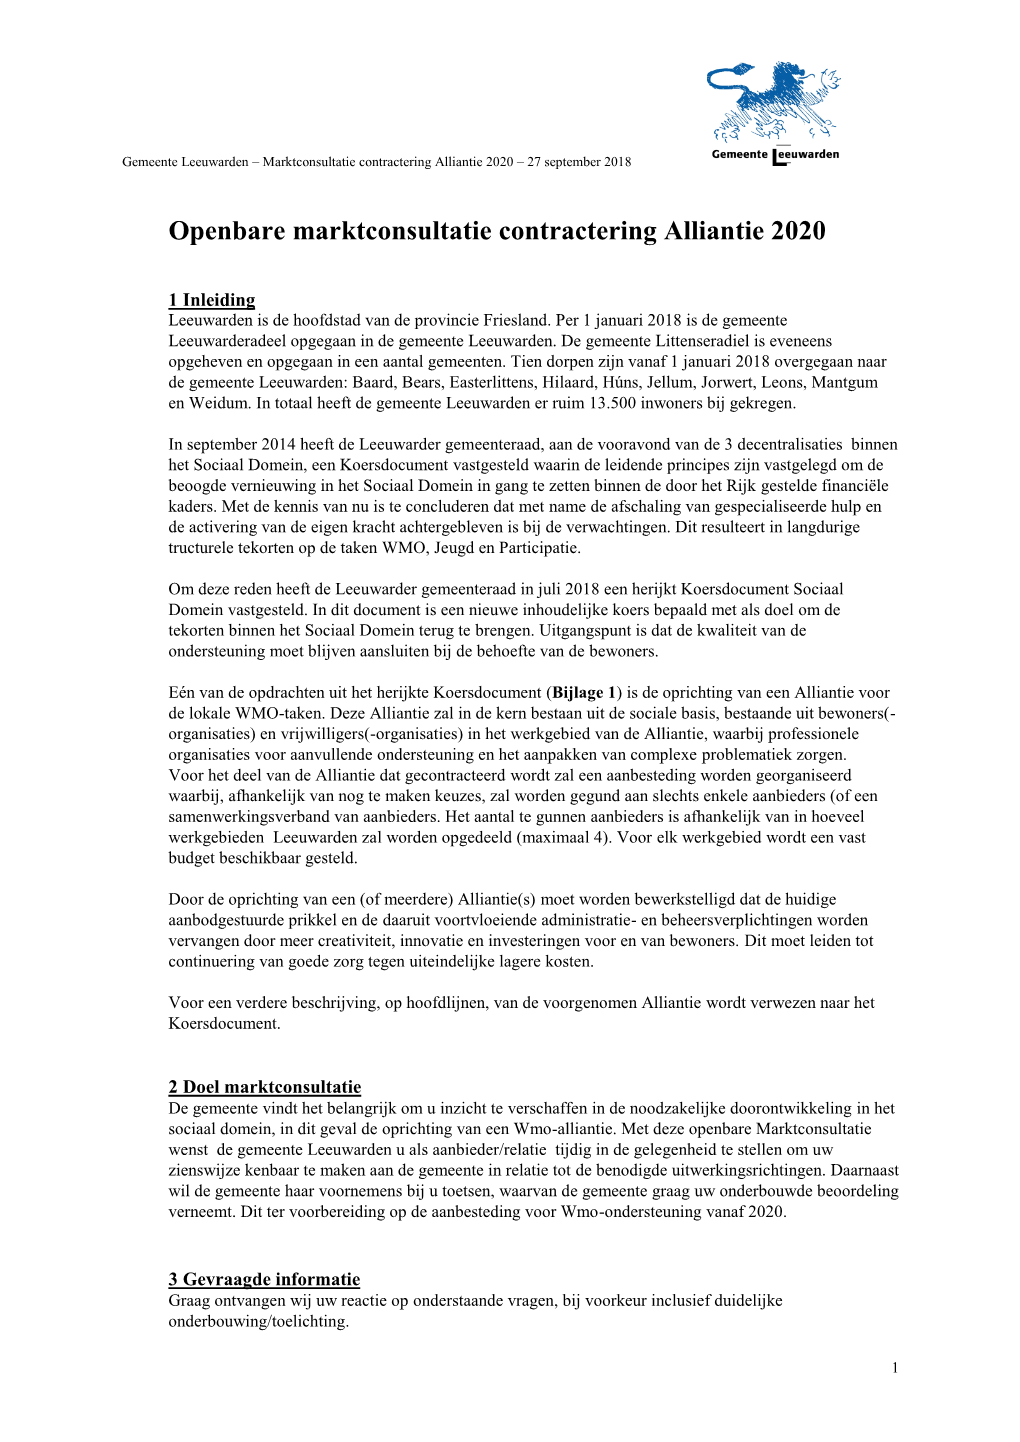 Openbare Marktconsultatie Contractering Alliantie 2020